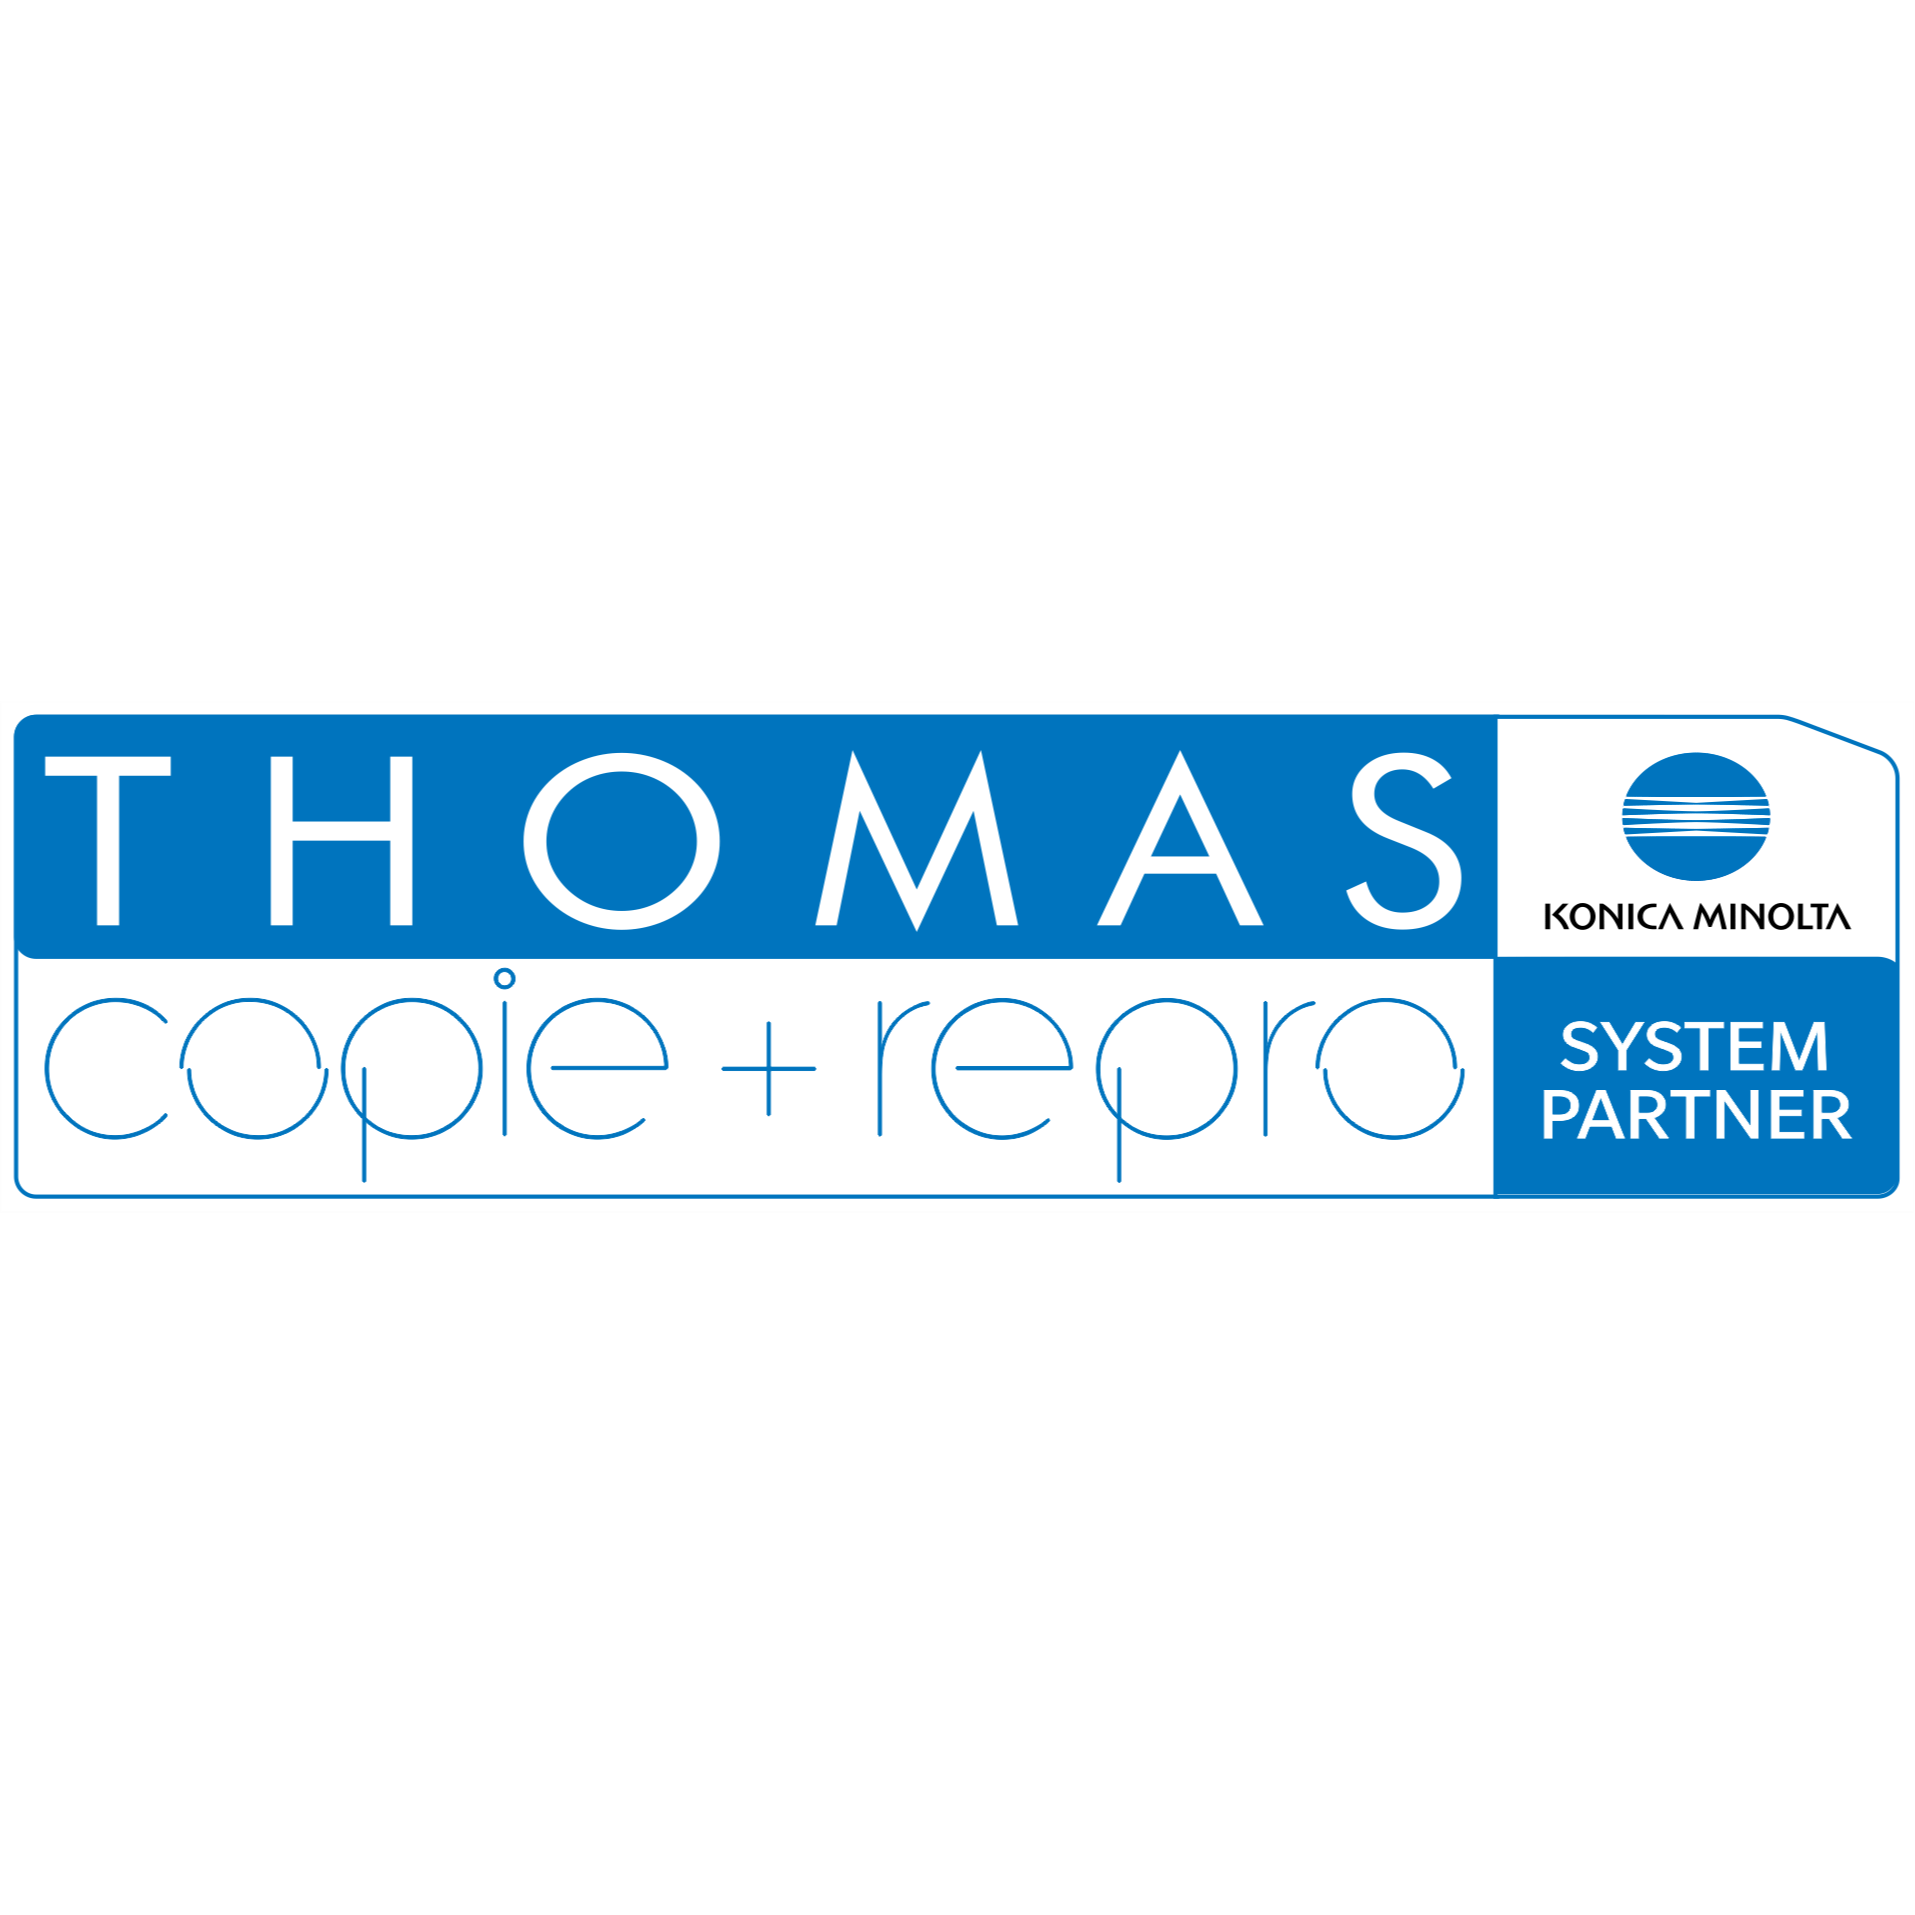 THOMAS copie + repro e.K. Copyshop Druck-, Scan- und Kopierdienstleistungen in Bautzen - Logo